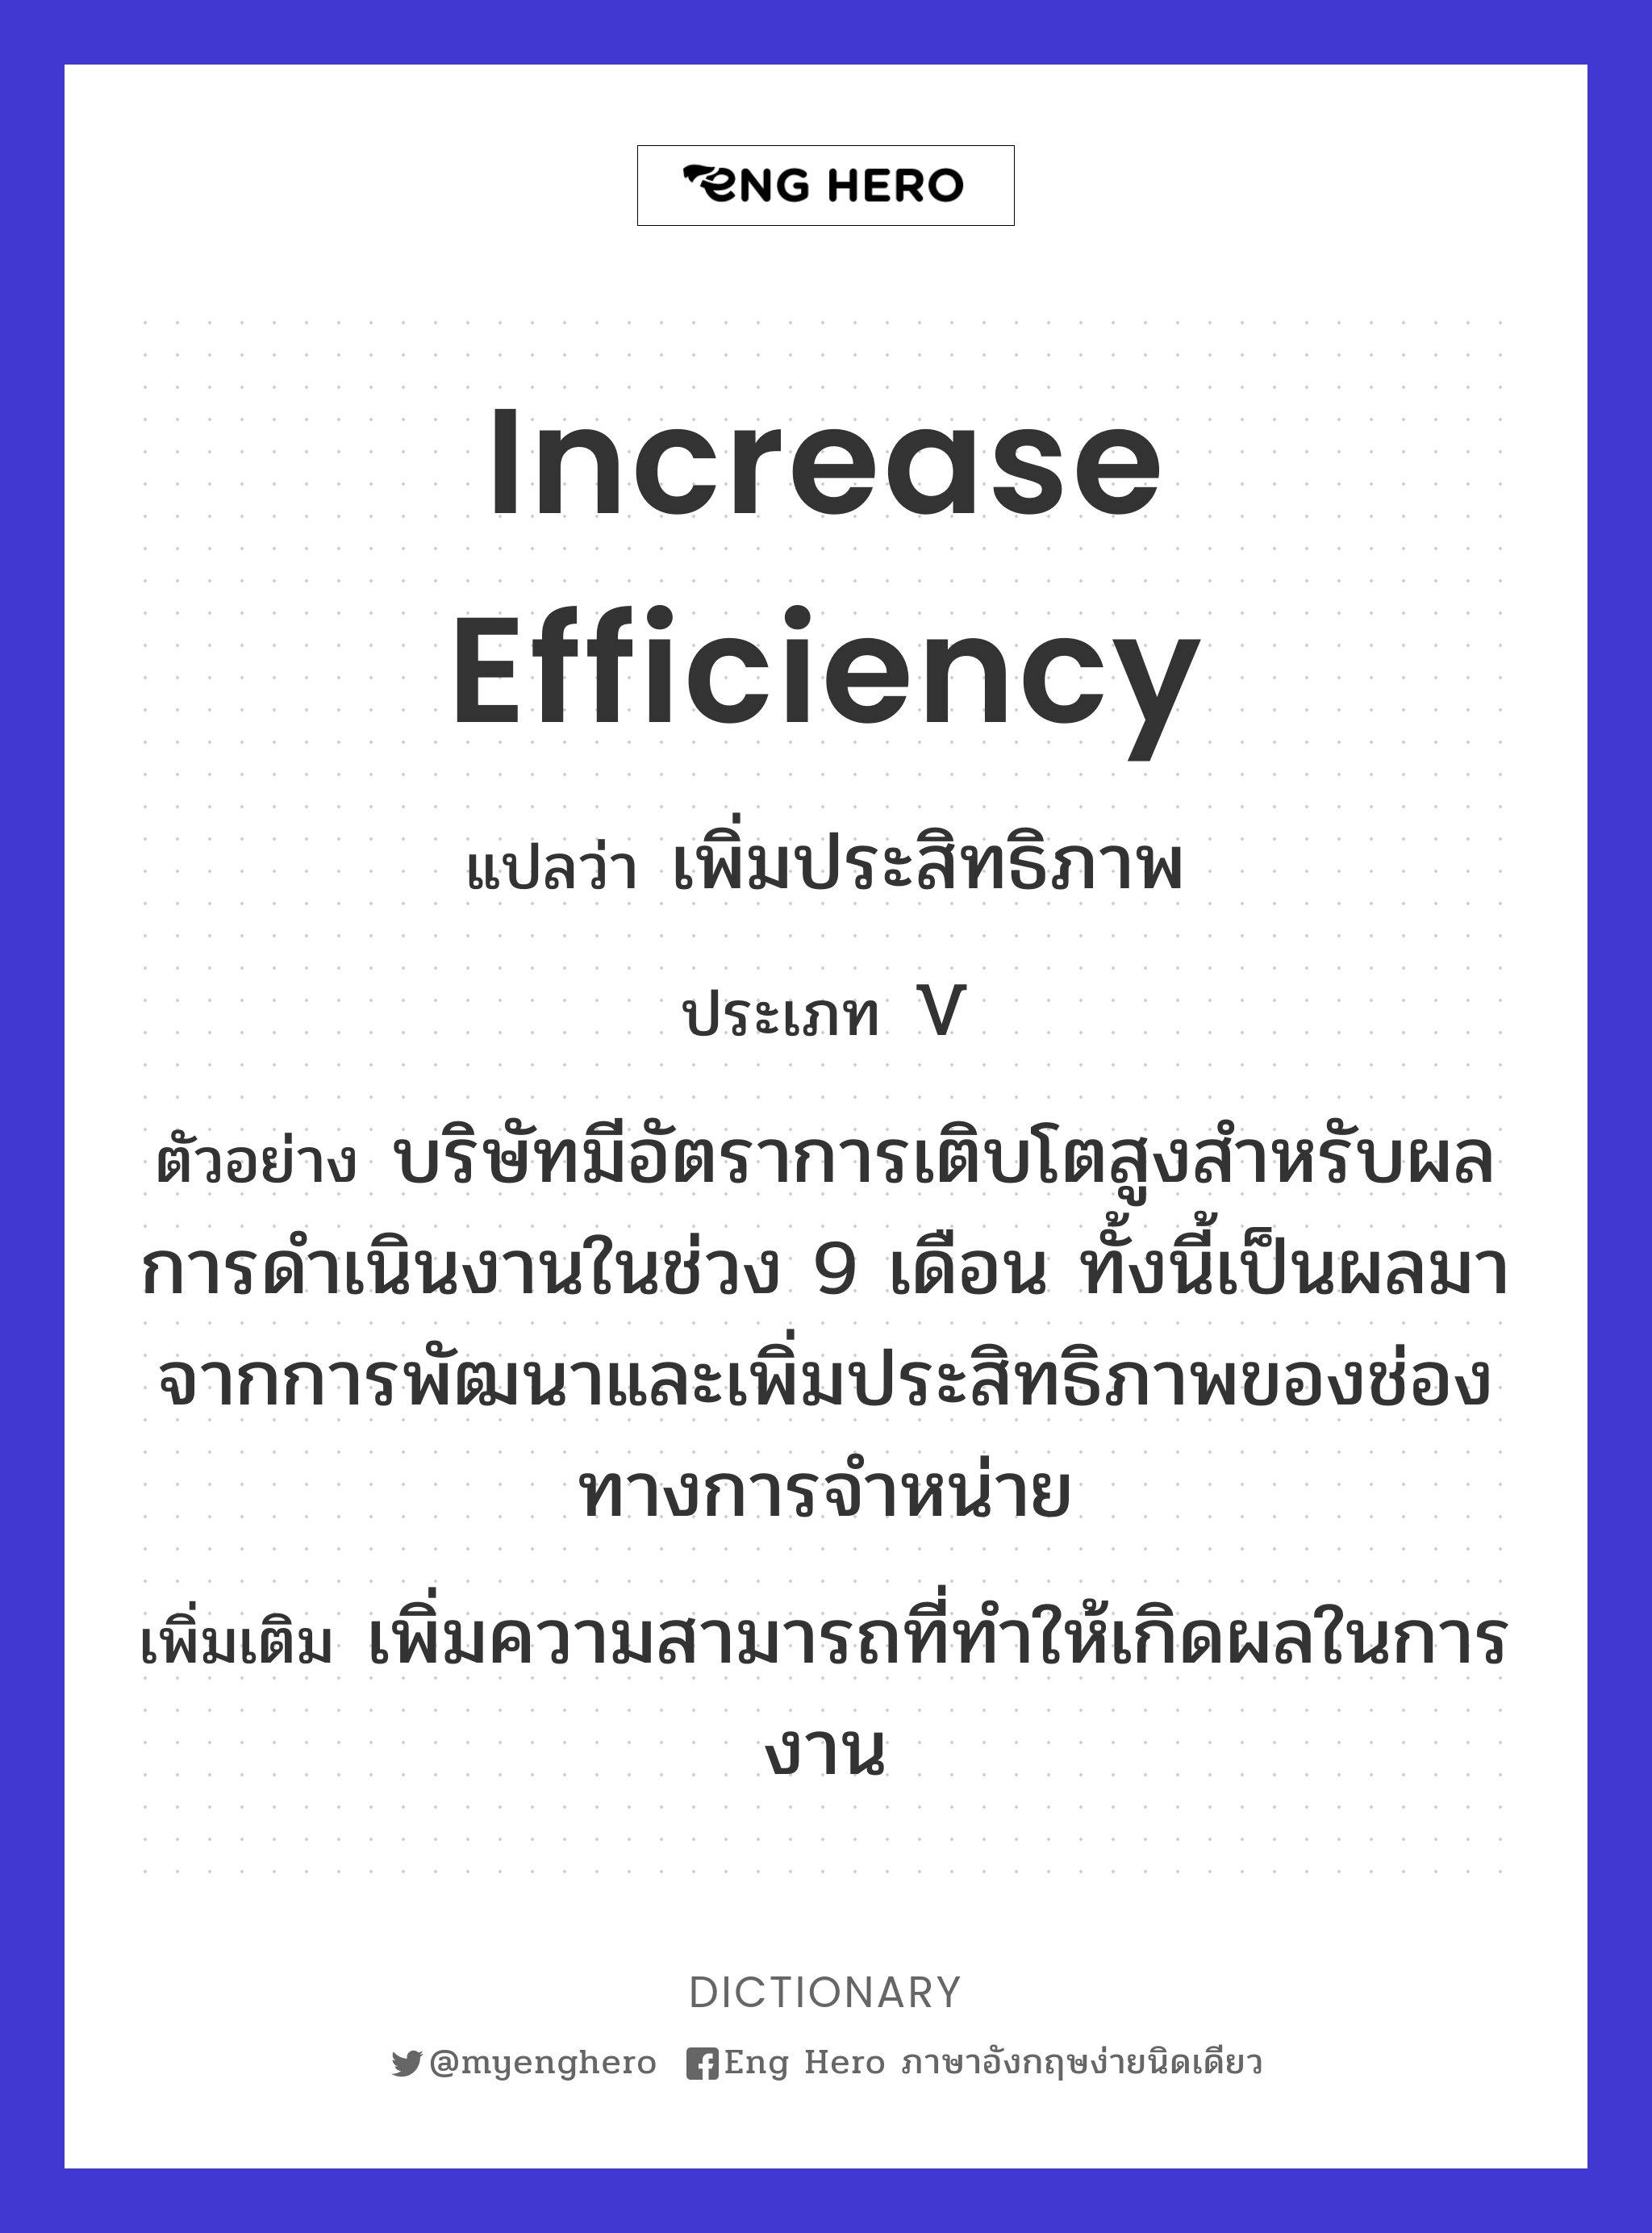 increase efficiency